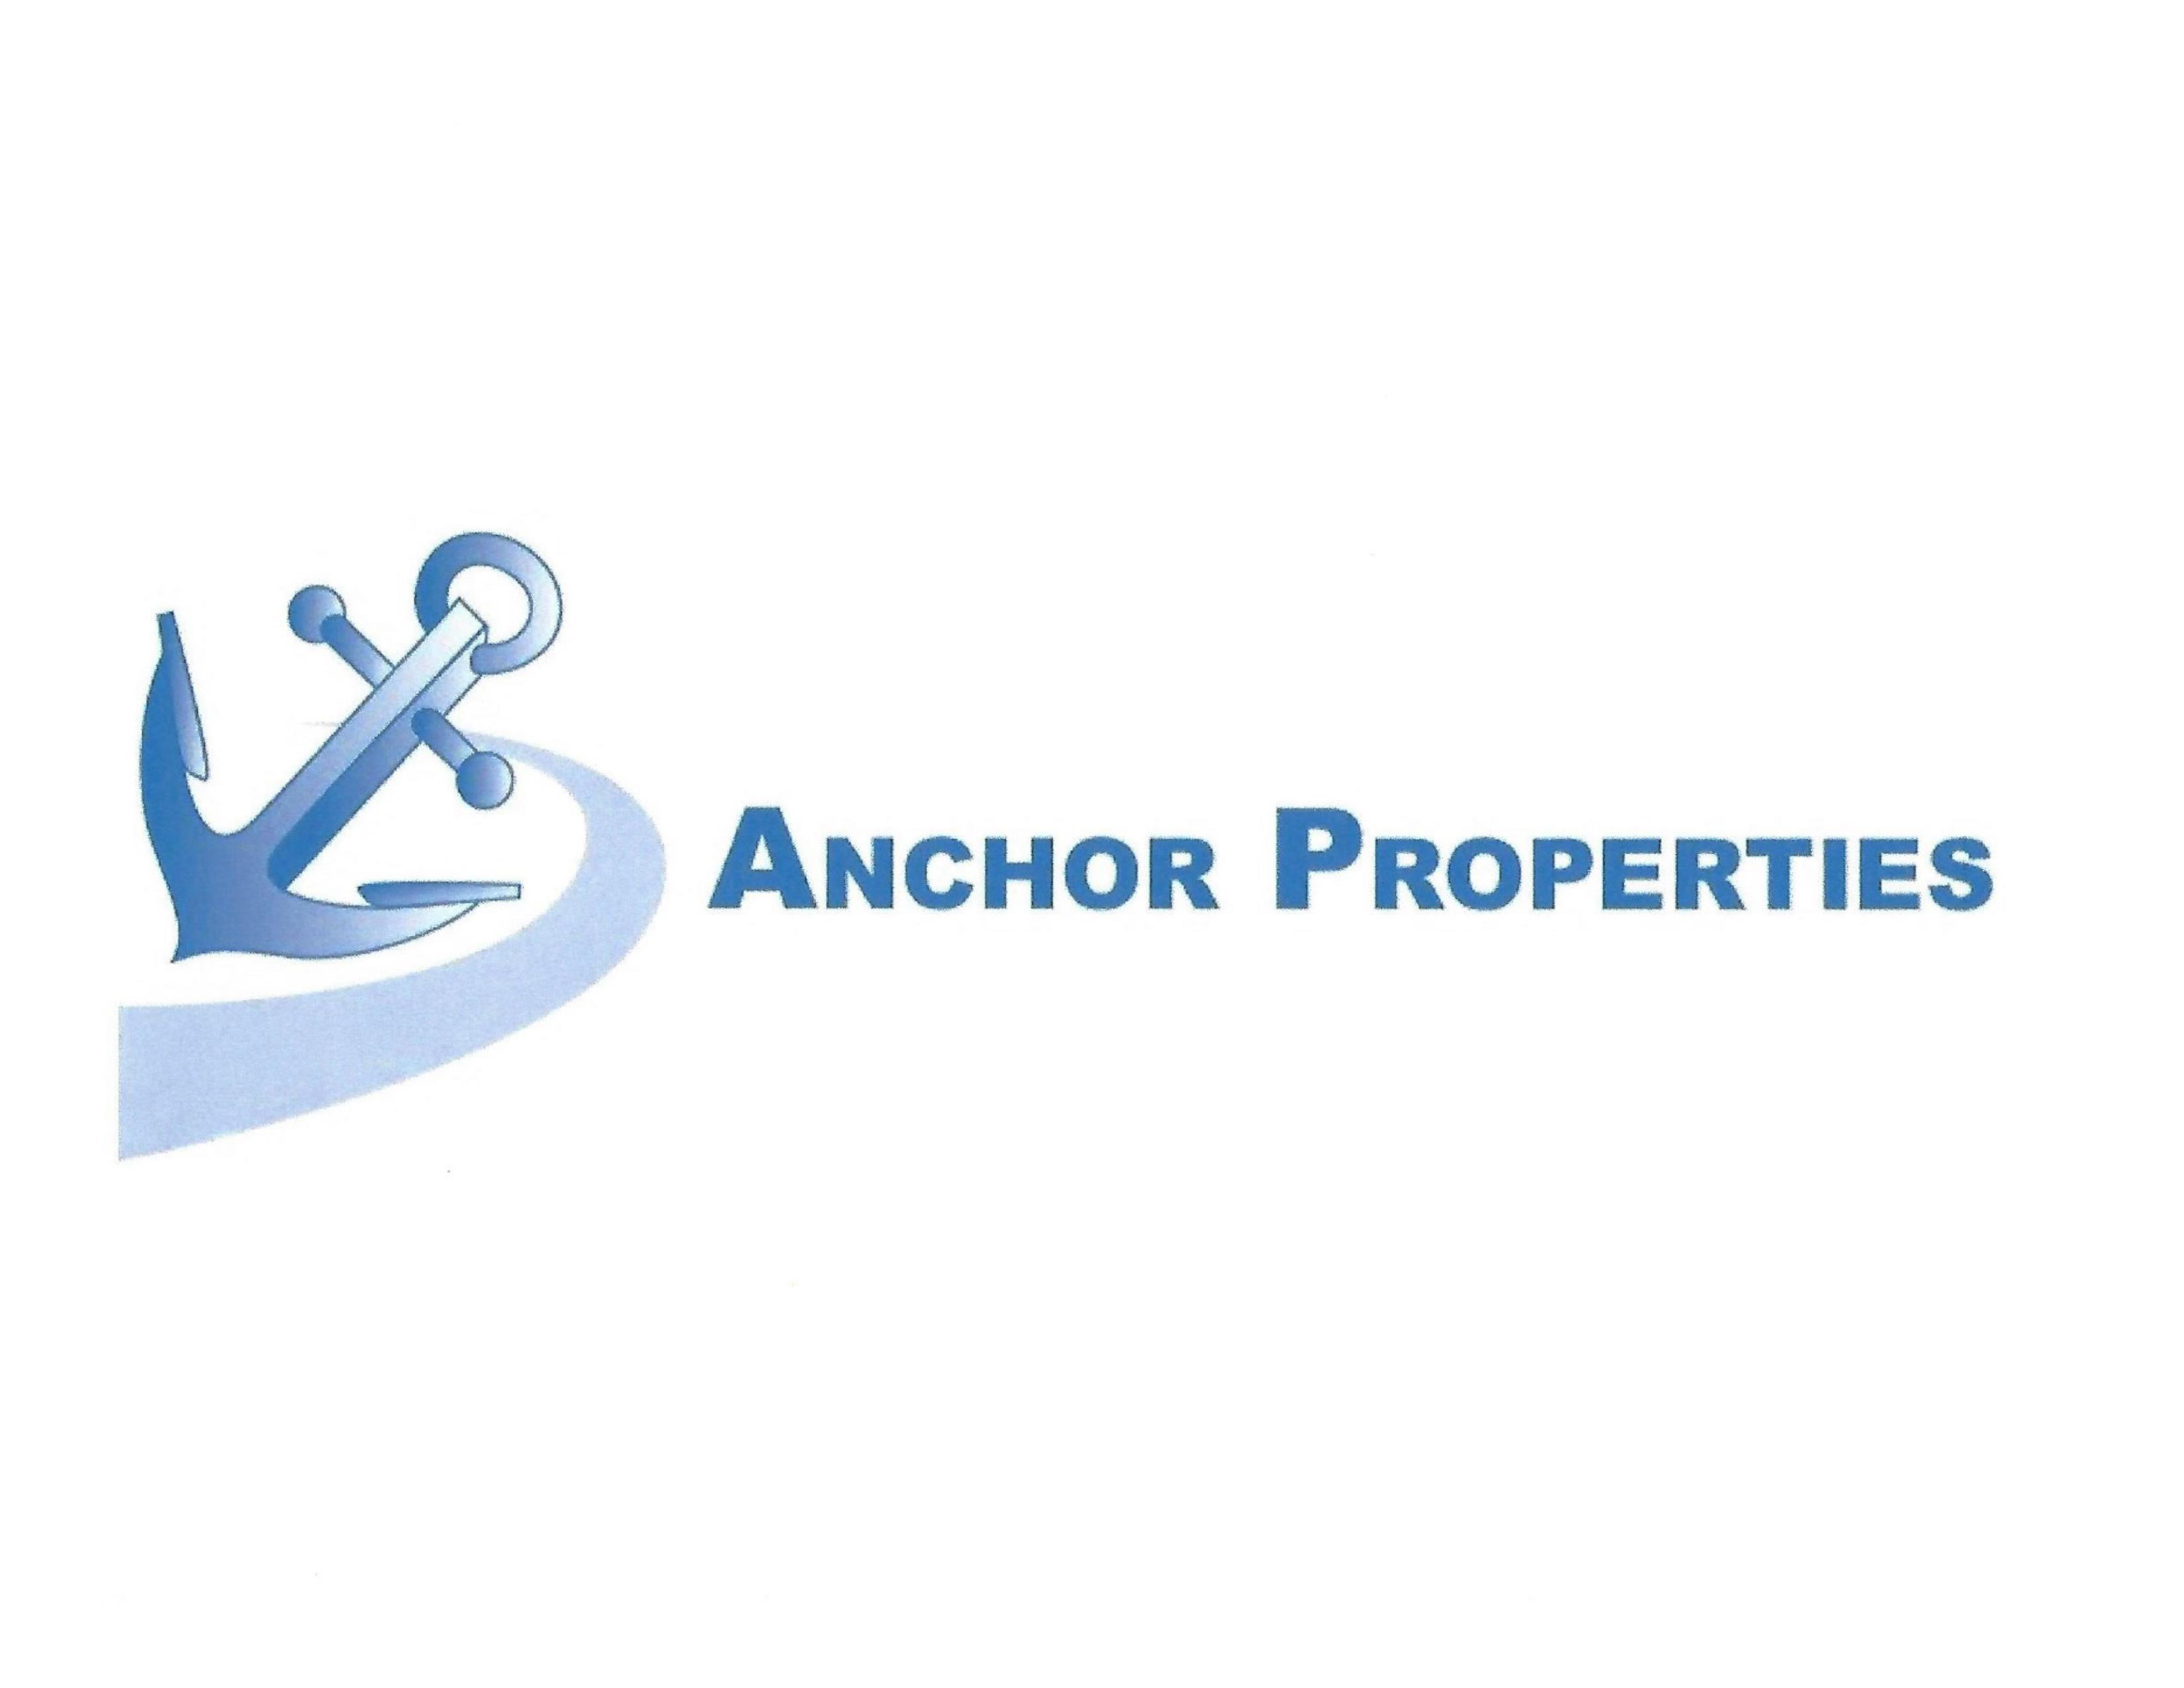 Anchor Properties - A dba of Anchor Funding Inc